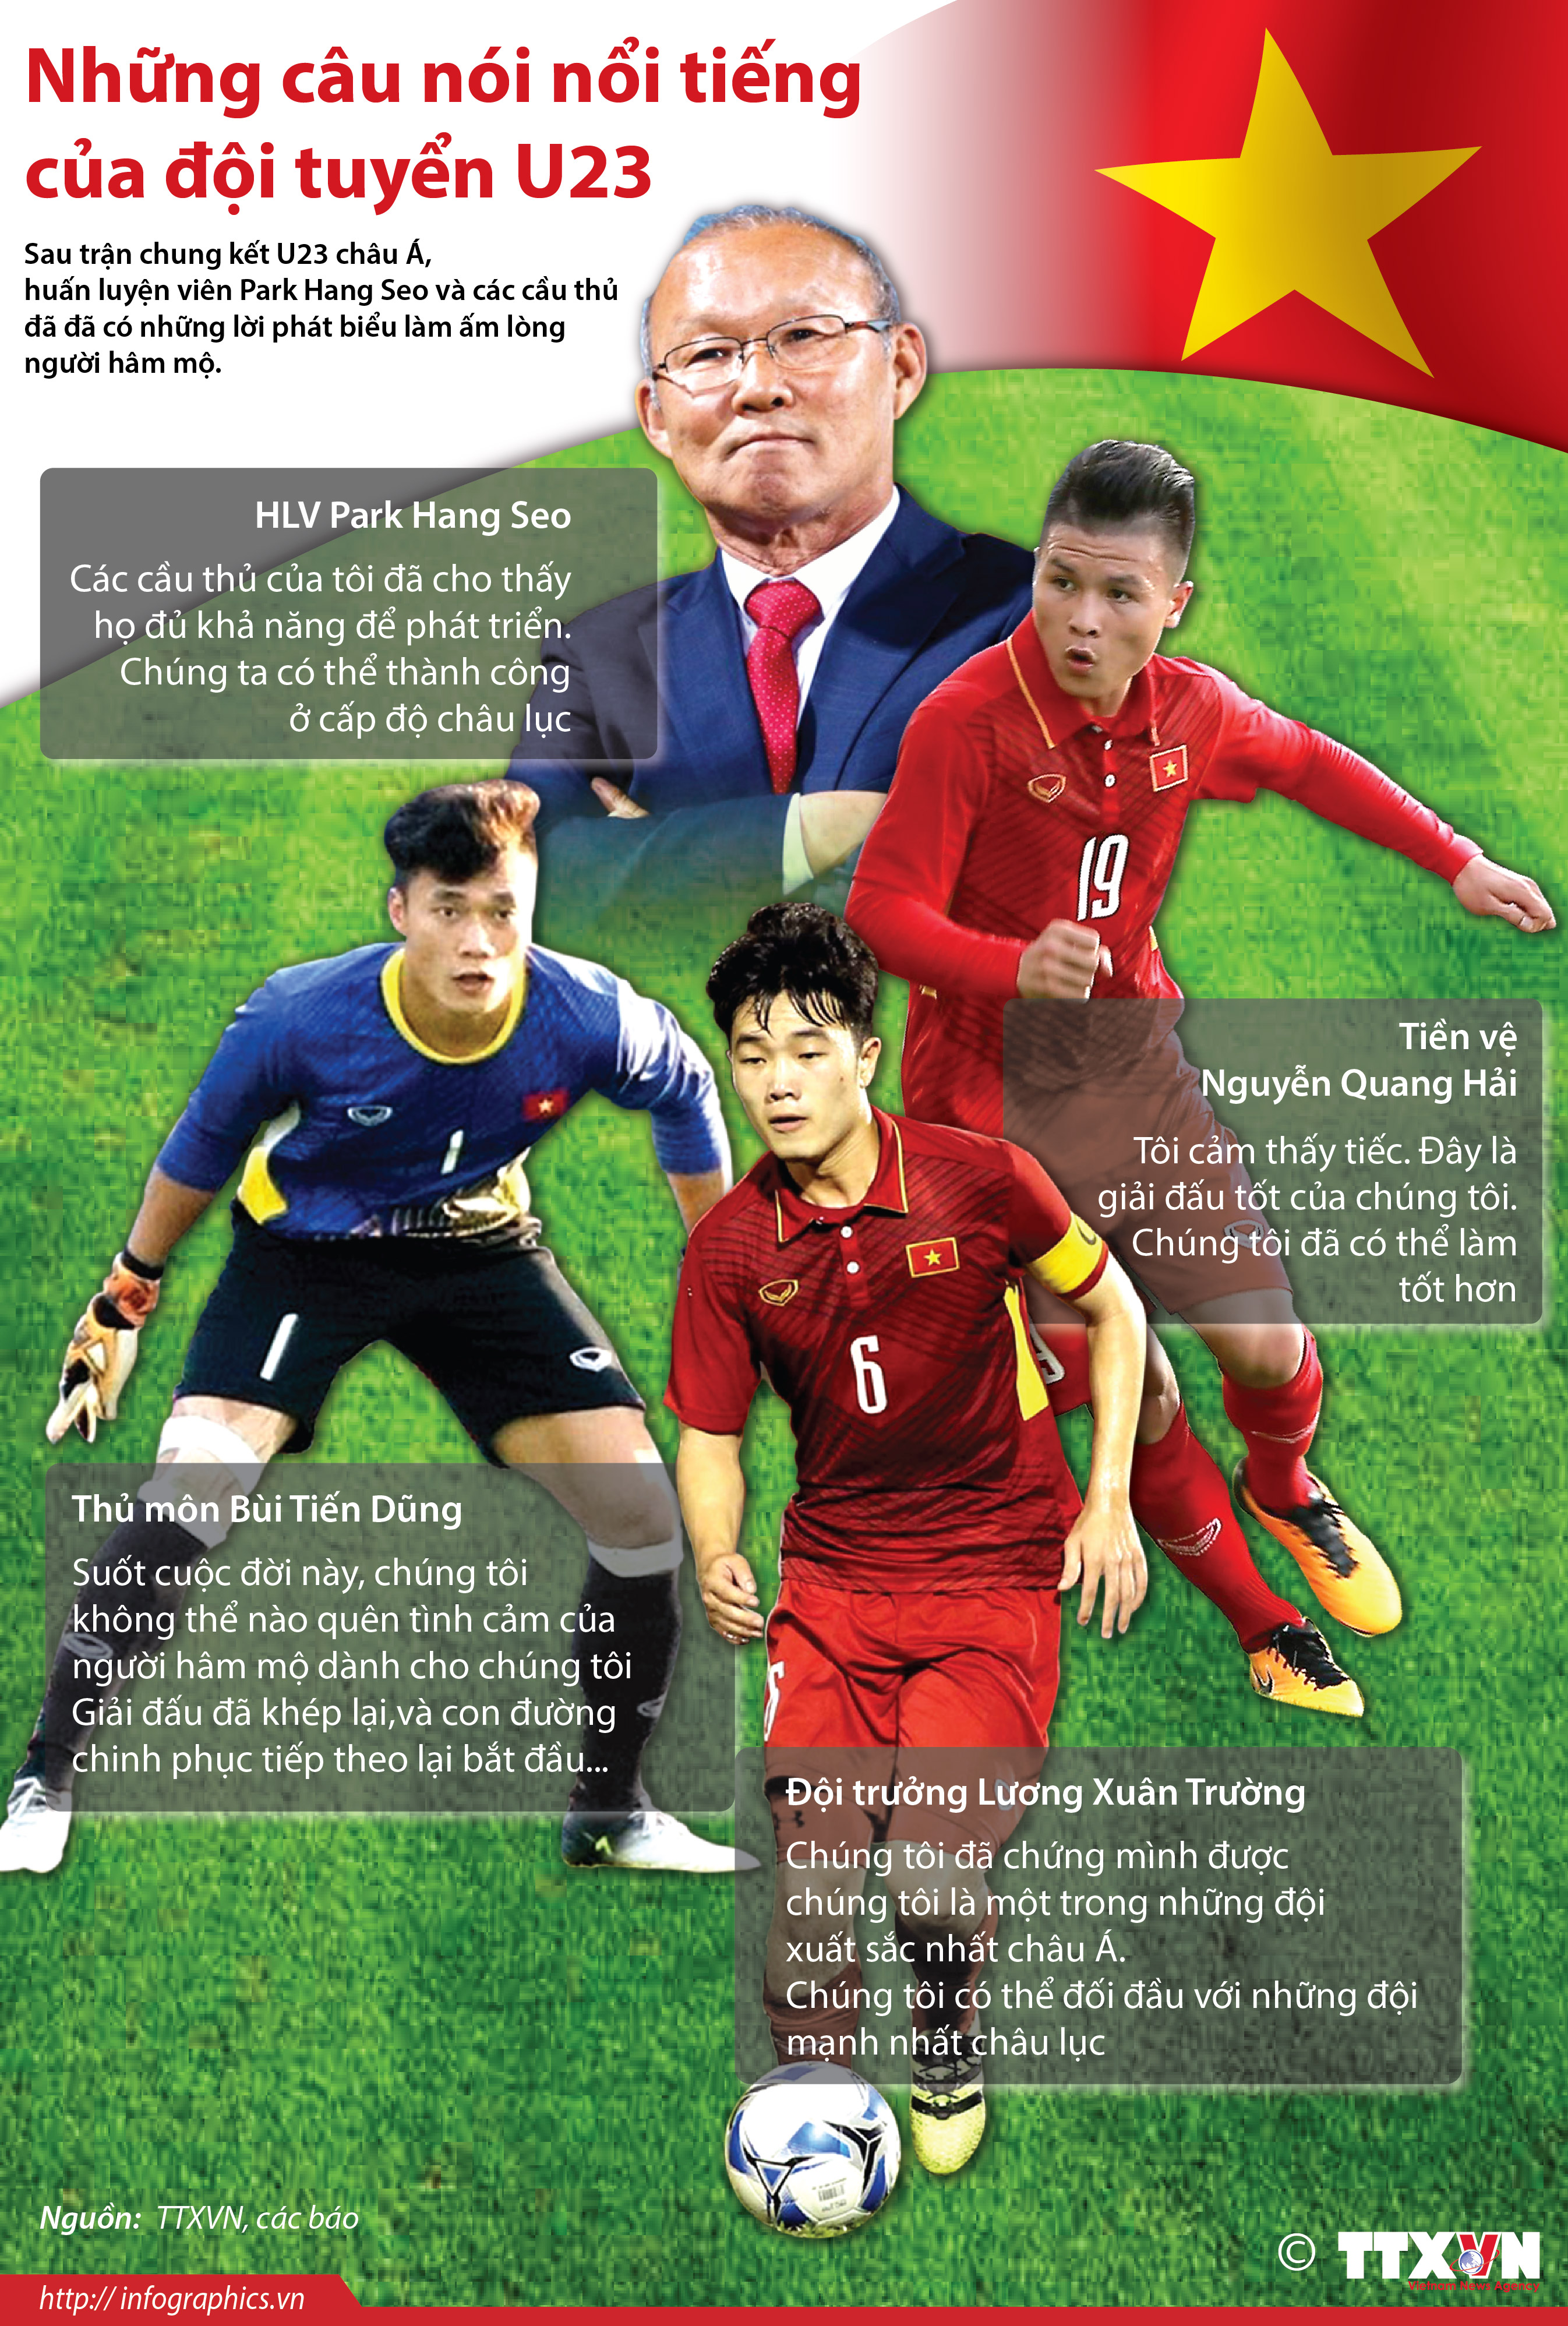 Ngắm những bức vẽ chân dung các cầu thủ U23 Việt Nam gây sốt mạng